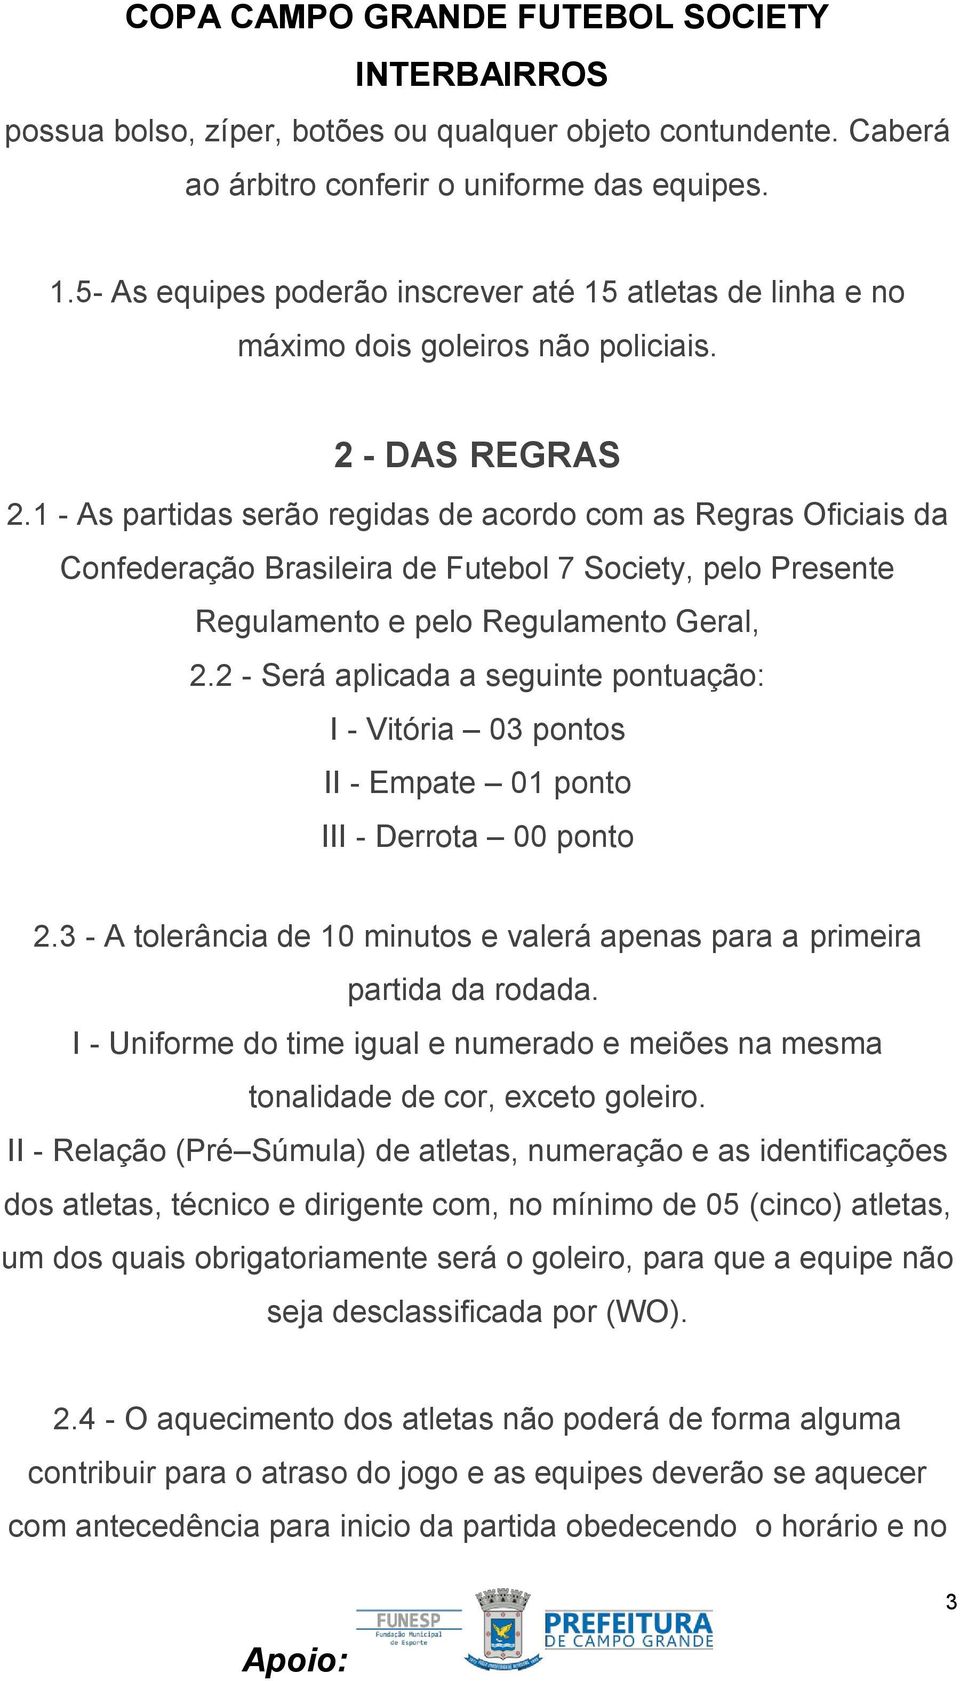 1 - As partidas serão regidas de acordo com as Regras Oficiais da Confederação Brasileira de Futebol 7 Society, pelo Presente Regulamento e pelo Regulamento Geral, 2.